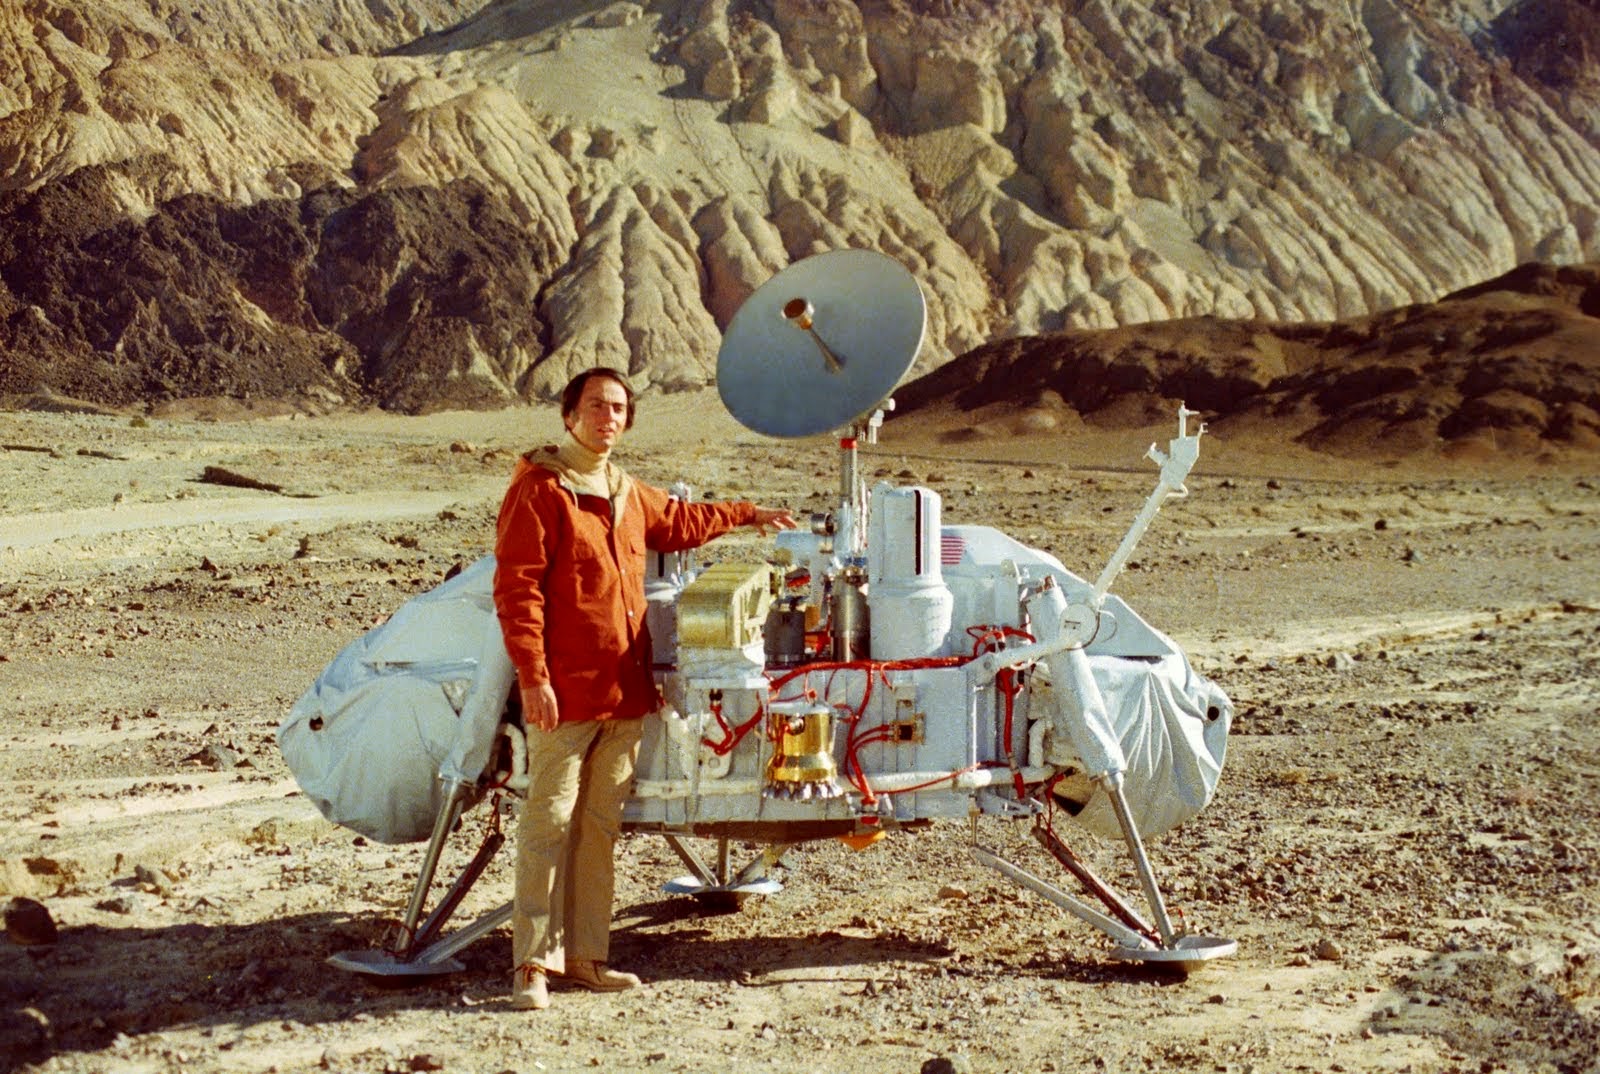 Carl Sagan and Viking lander